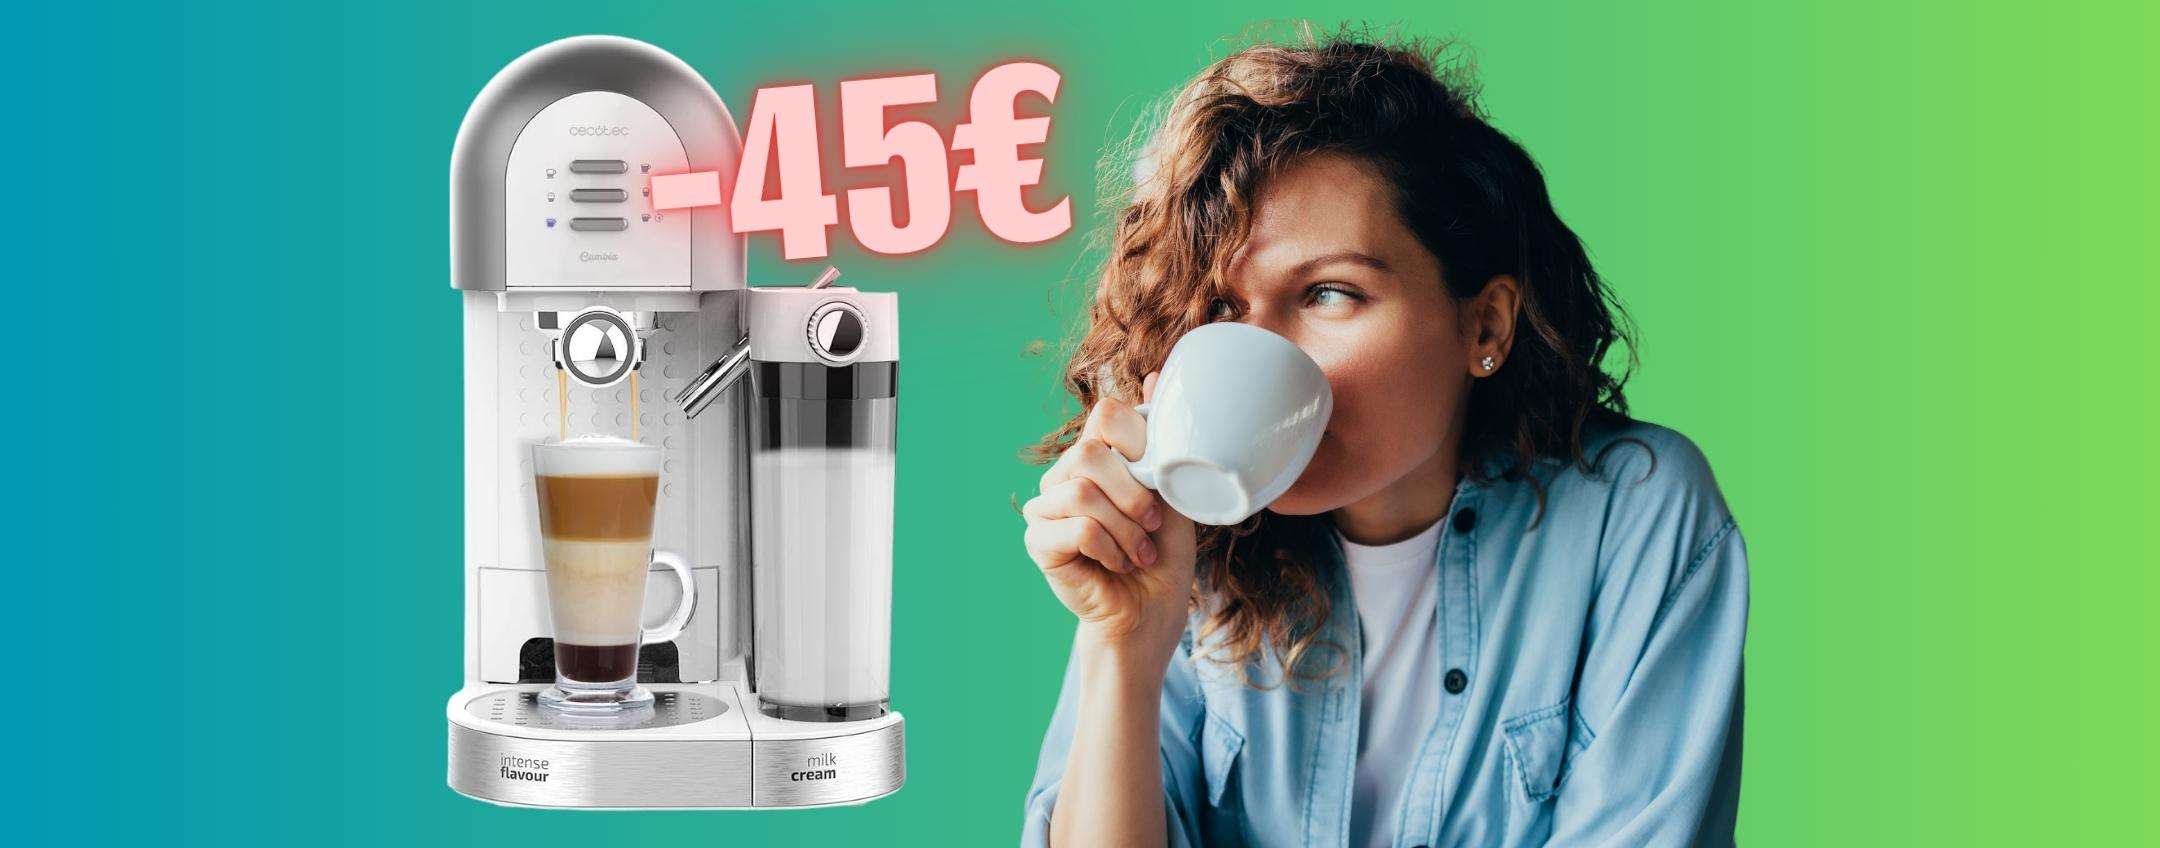 Macchina per caffè semiautomatica, macinato e capsule tua a SOLI 99€